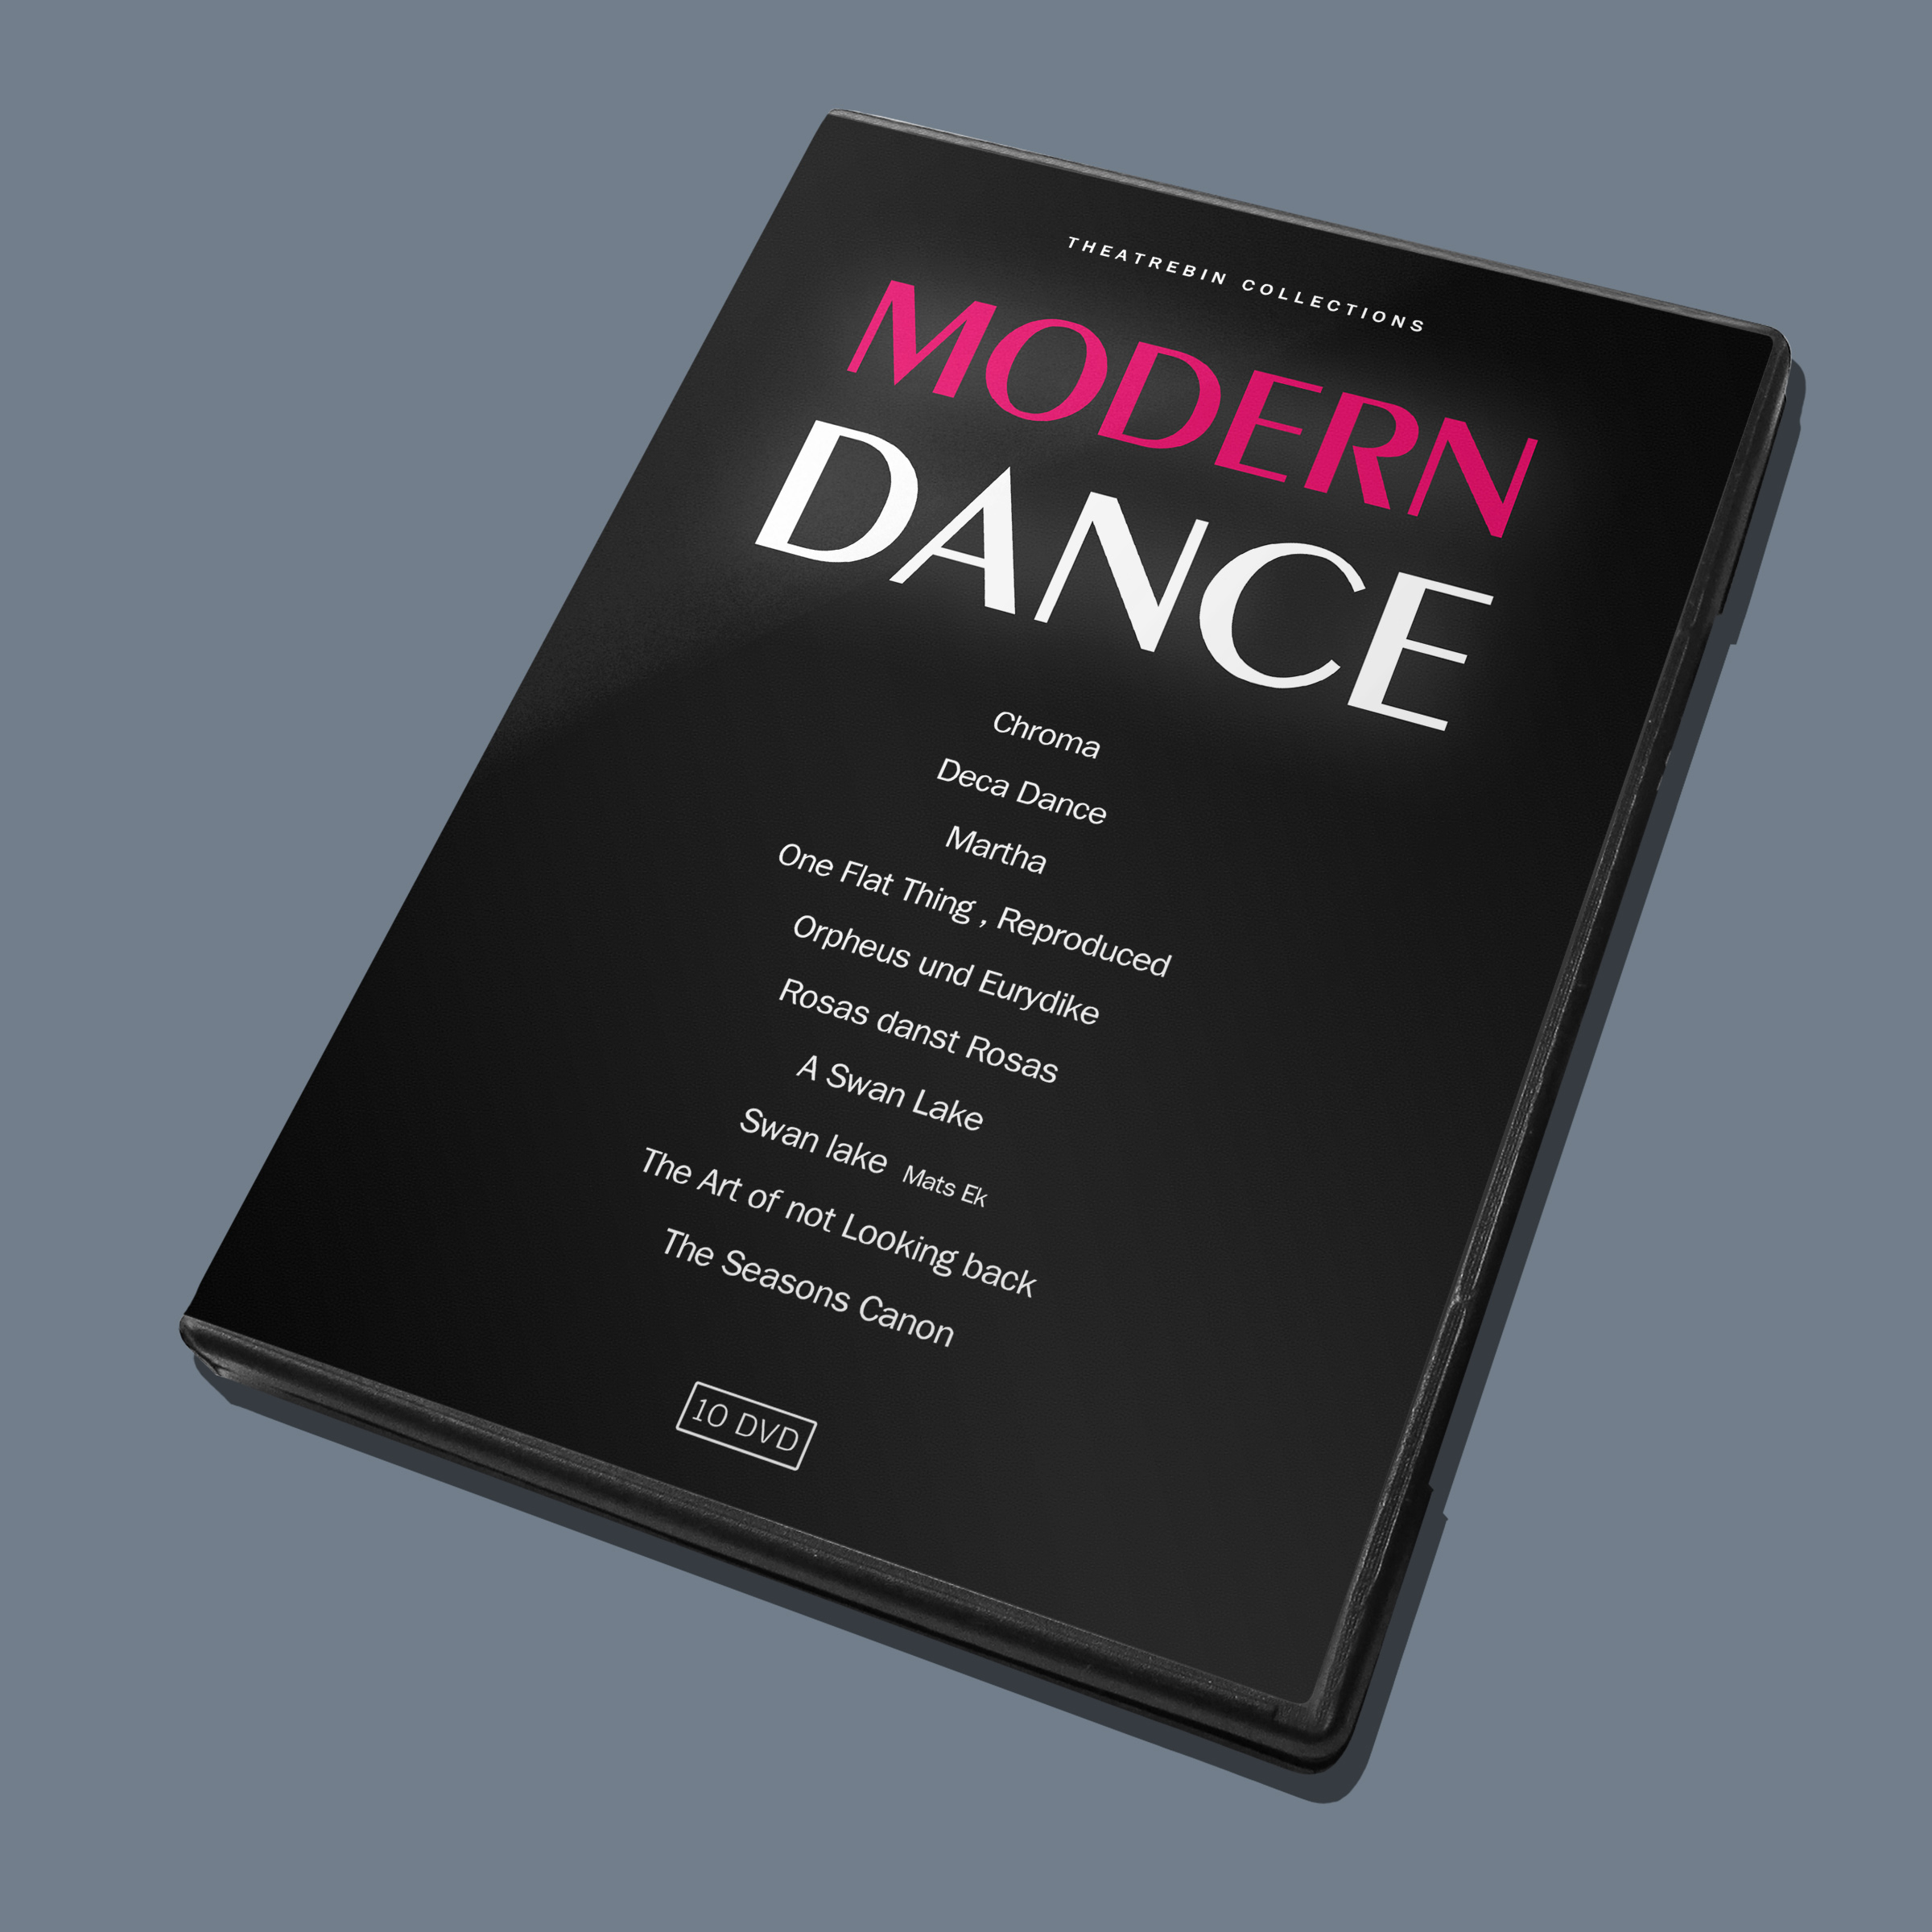 مجموعه رقص مدرن / Modern Dance Collection